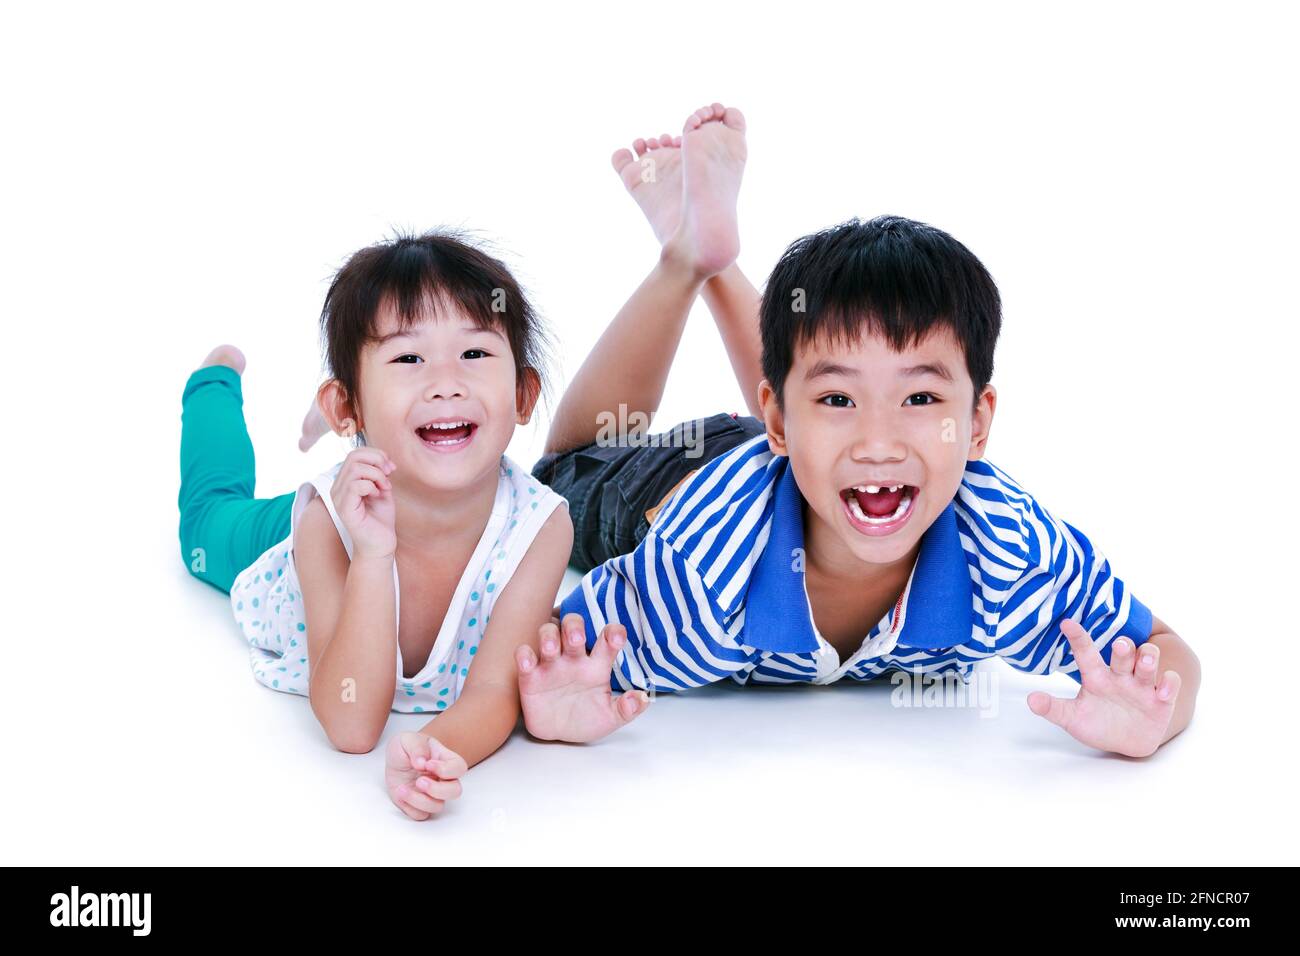 Enfants asiatiques couchés sur le sol. Les enfants chinois se sont contentés et souriants, isolés sur fond blanc. Conceptuel de l'amour des frères et sœurs. Happ Banque D'Images